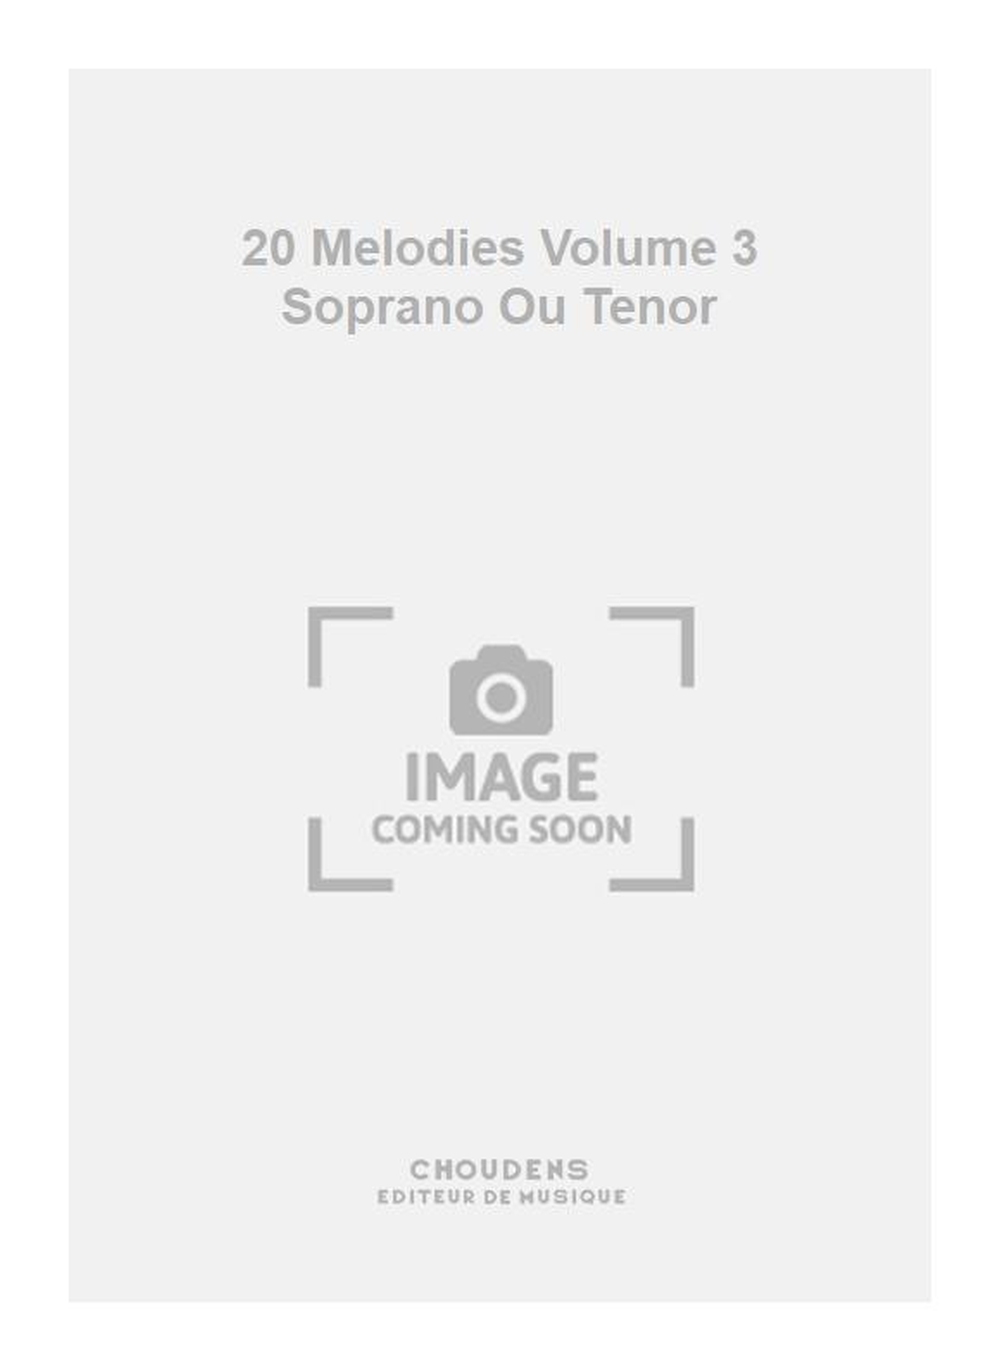 Charles Gounod: 20 Melodies Volume 3 Soprano Ou Tenor